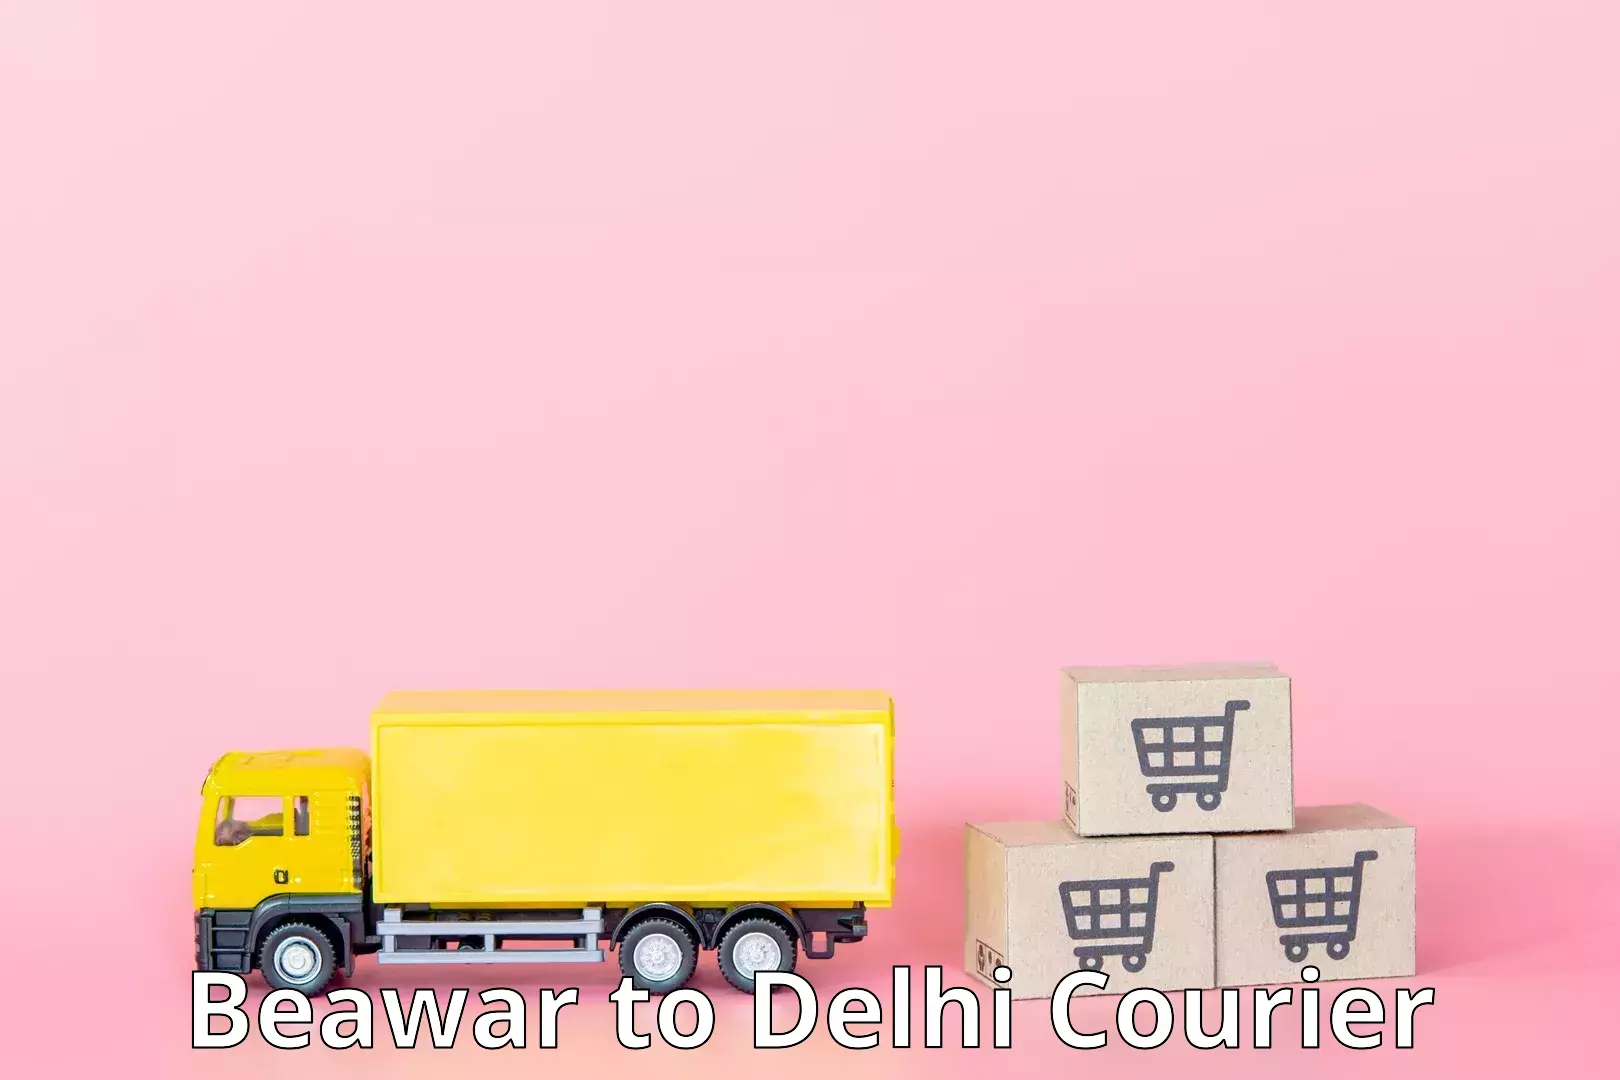 Multi-city courier Beawar to IIT Delhi